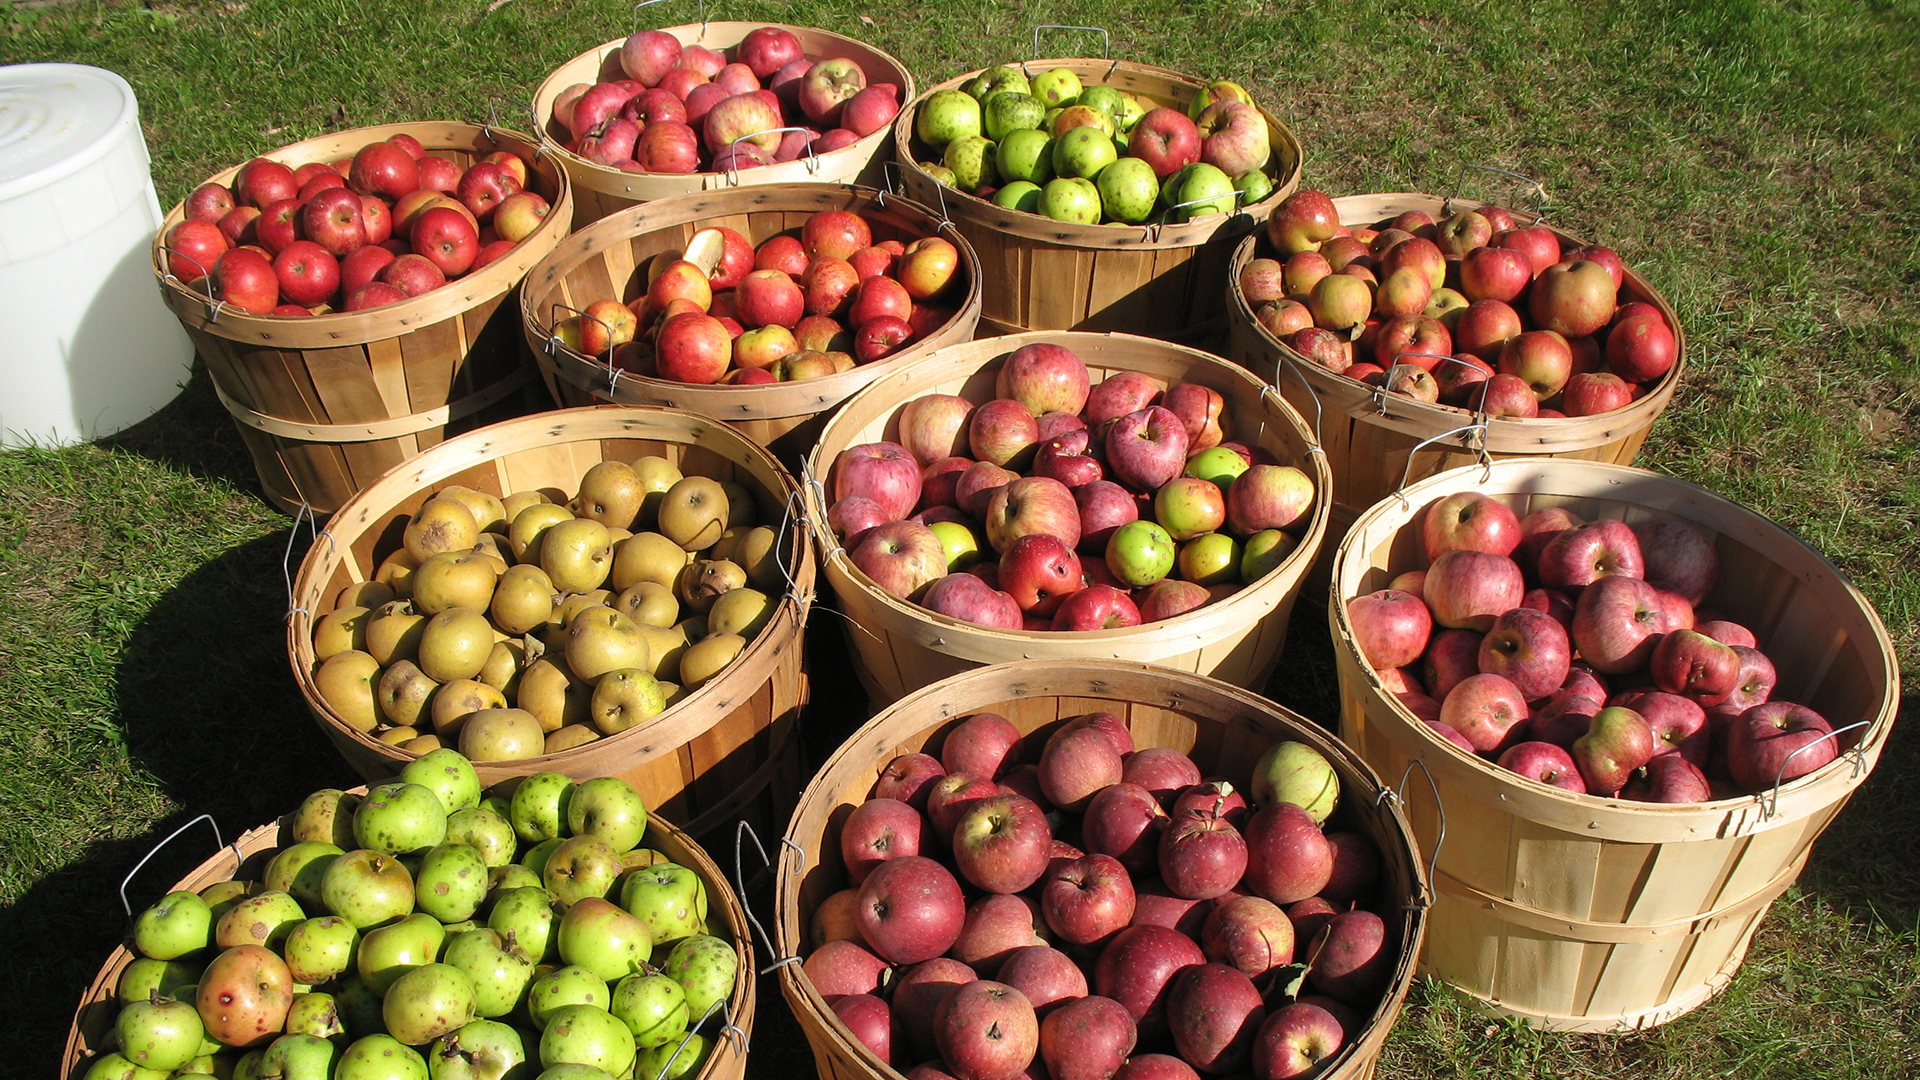 Apples in Bushel Baskets - Full Width Image